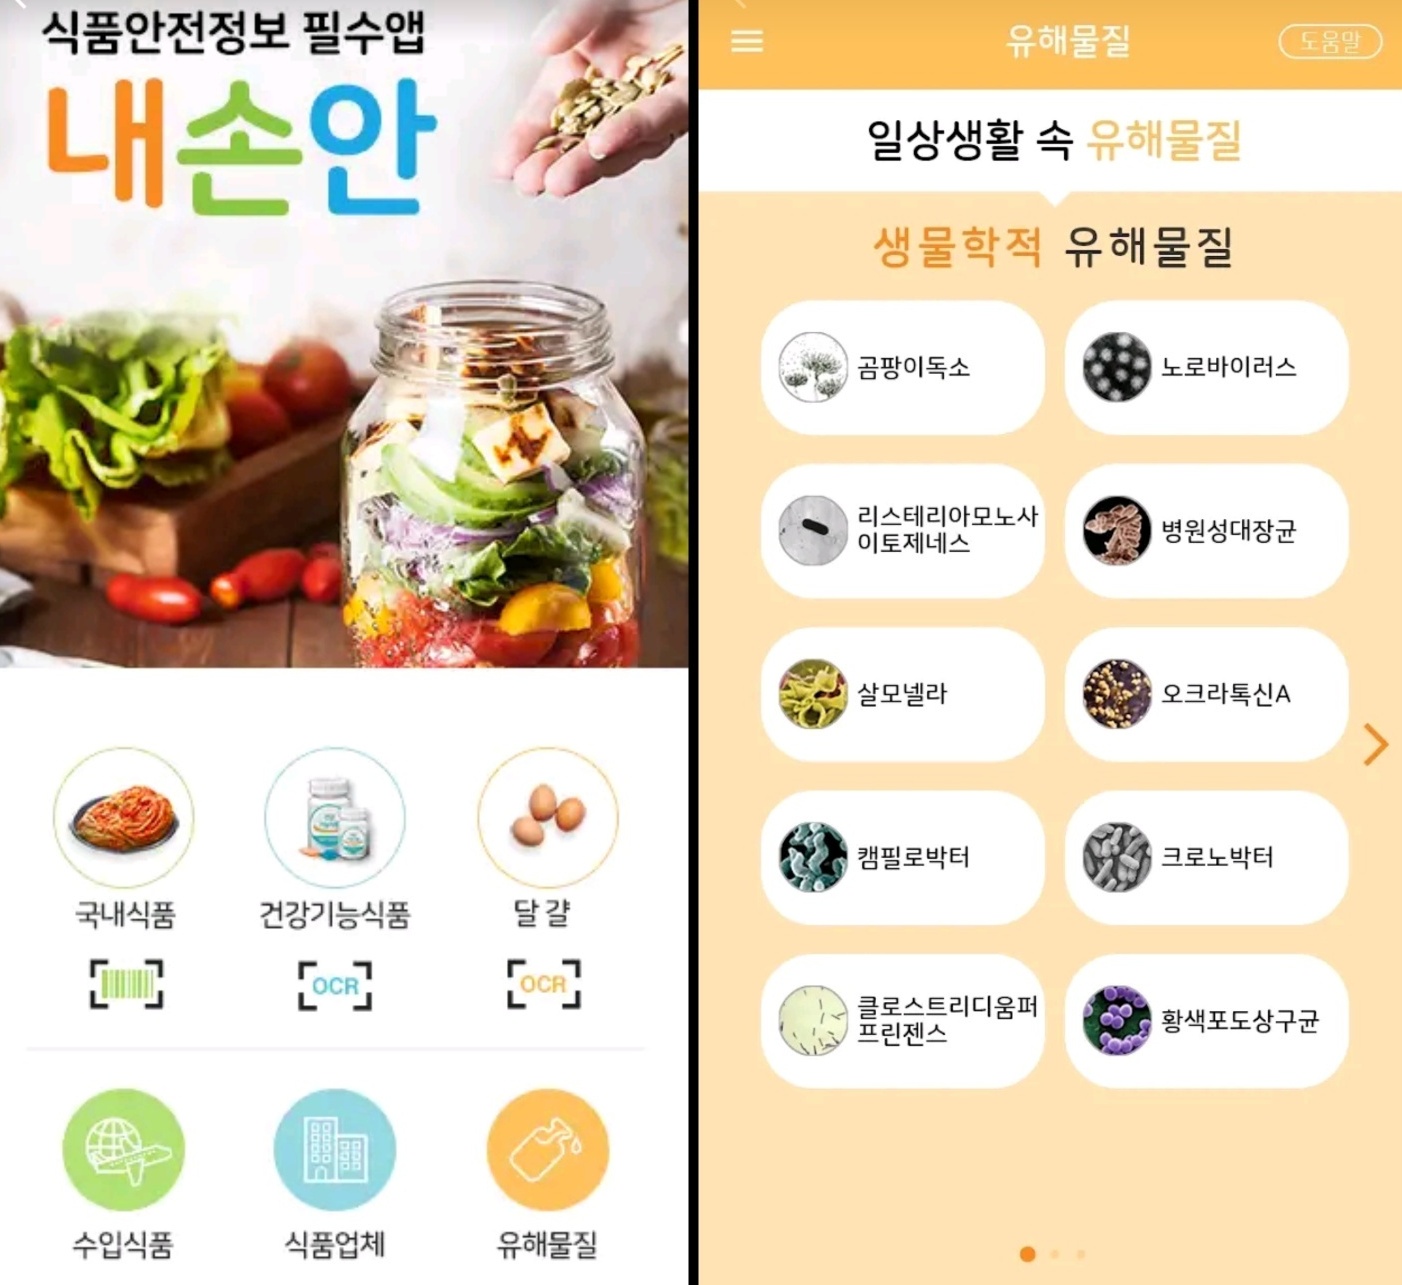 식품안전정보 필수 앱 ‘내 손안 식품 안전 정보’ 앱을 활용하면 이용하는 음식점의 행정처분 여부를 확인할 수 있습니다.